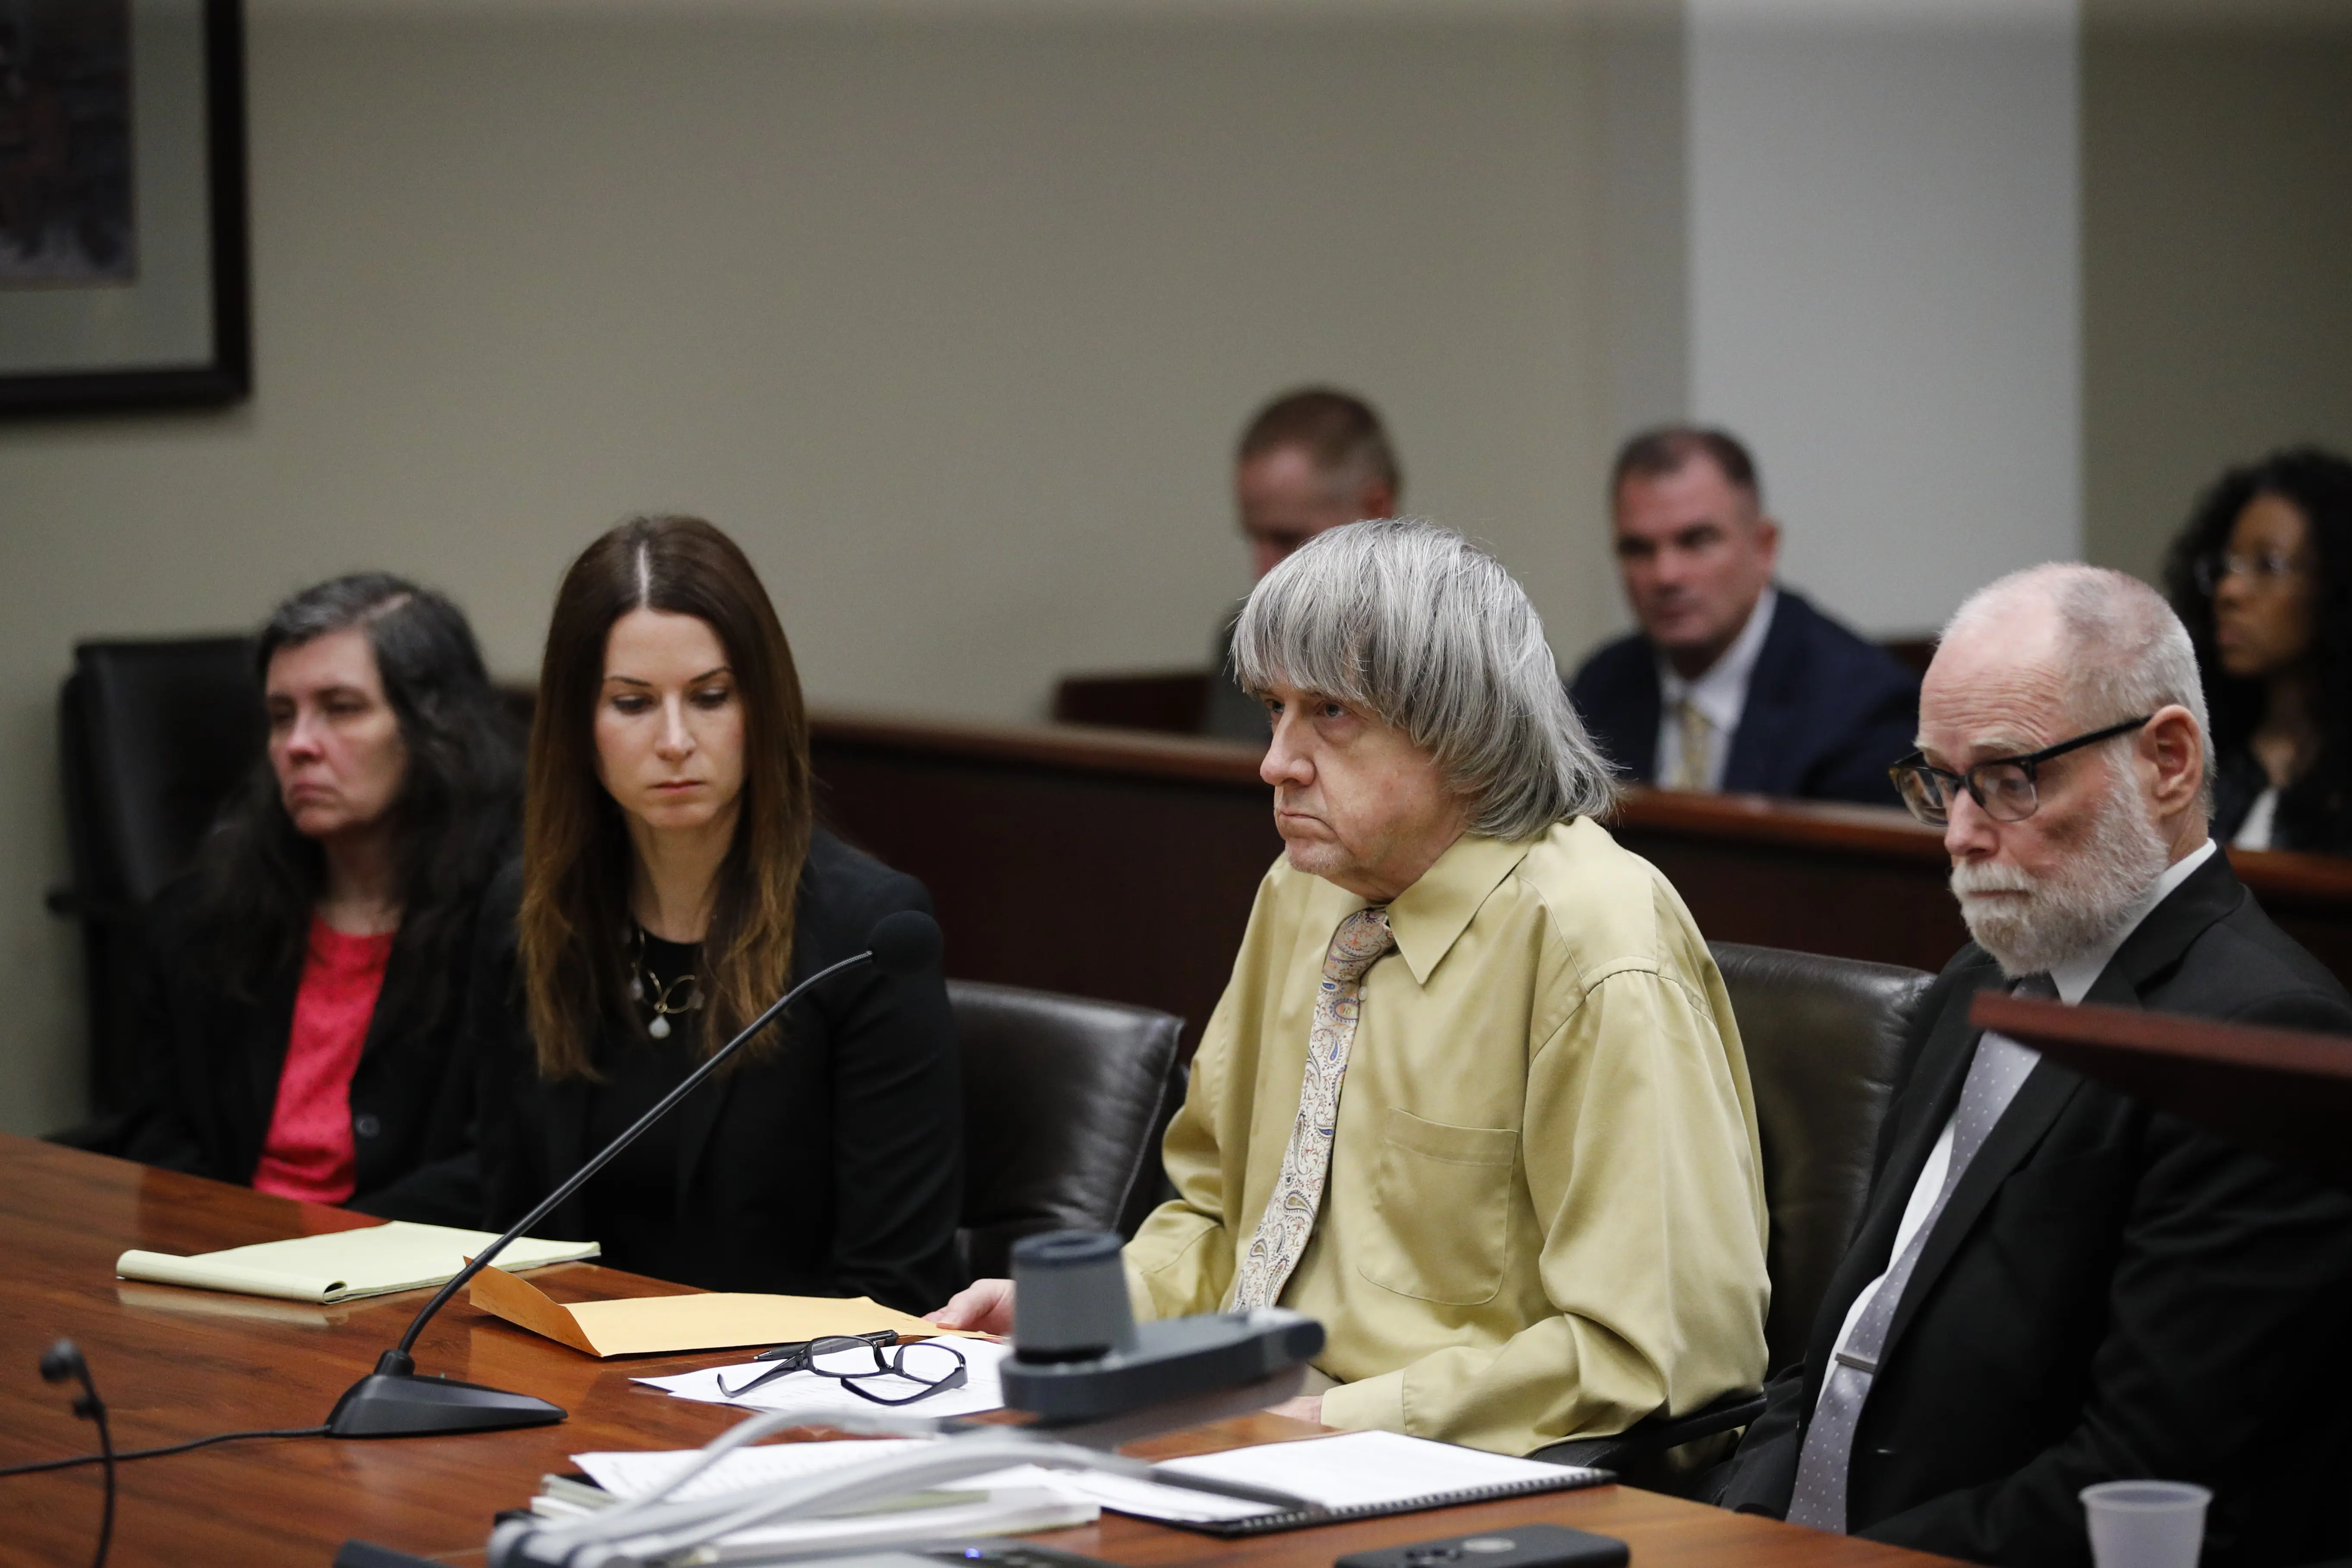 דיוויד טורפין (שני מימין) עם אשתו לואיז (משמאל) בבית המשפט מודים בהתעללות בילדיהם בקליפורניה ב-22 בפברואר 2019